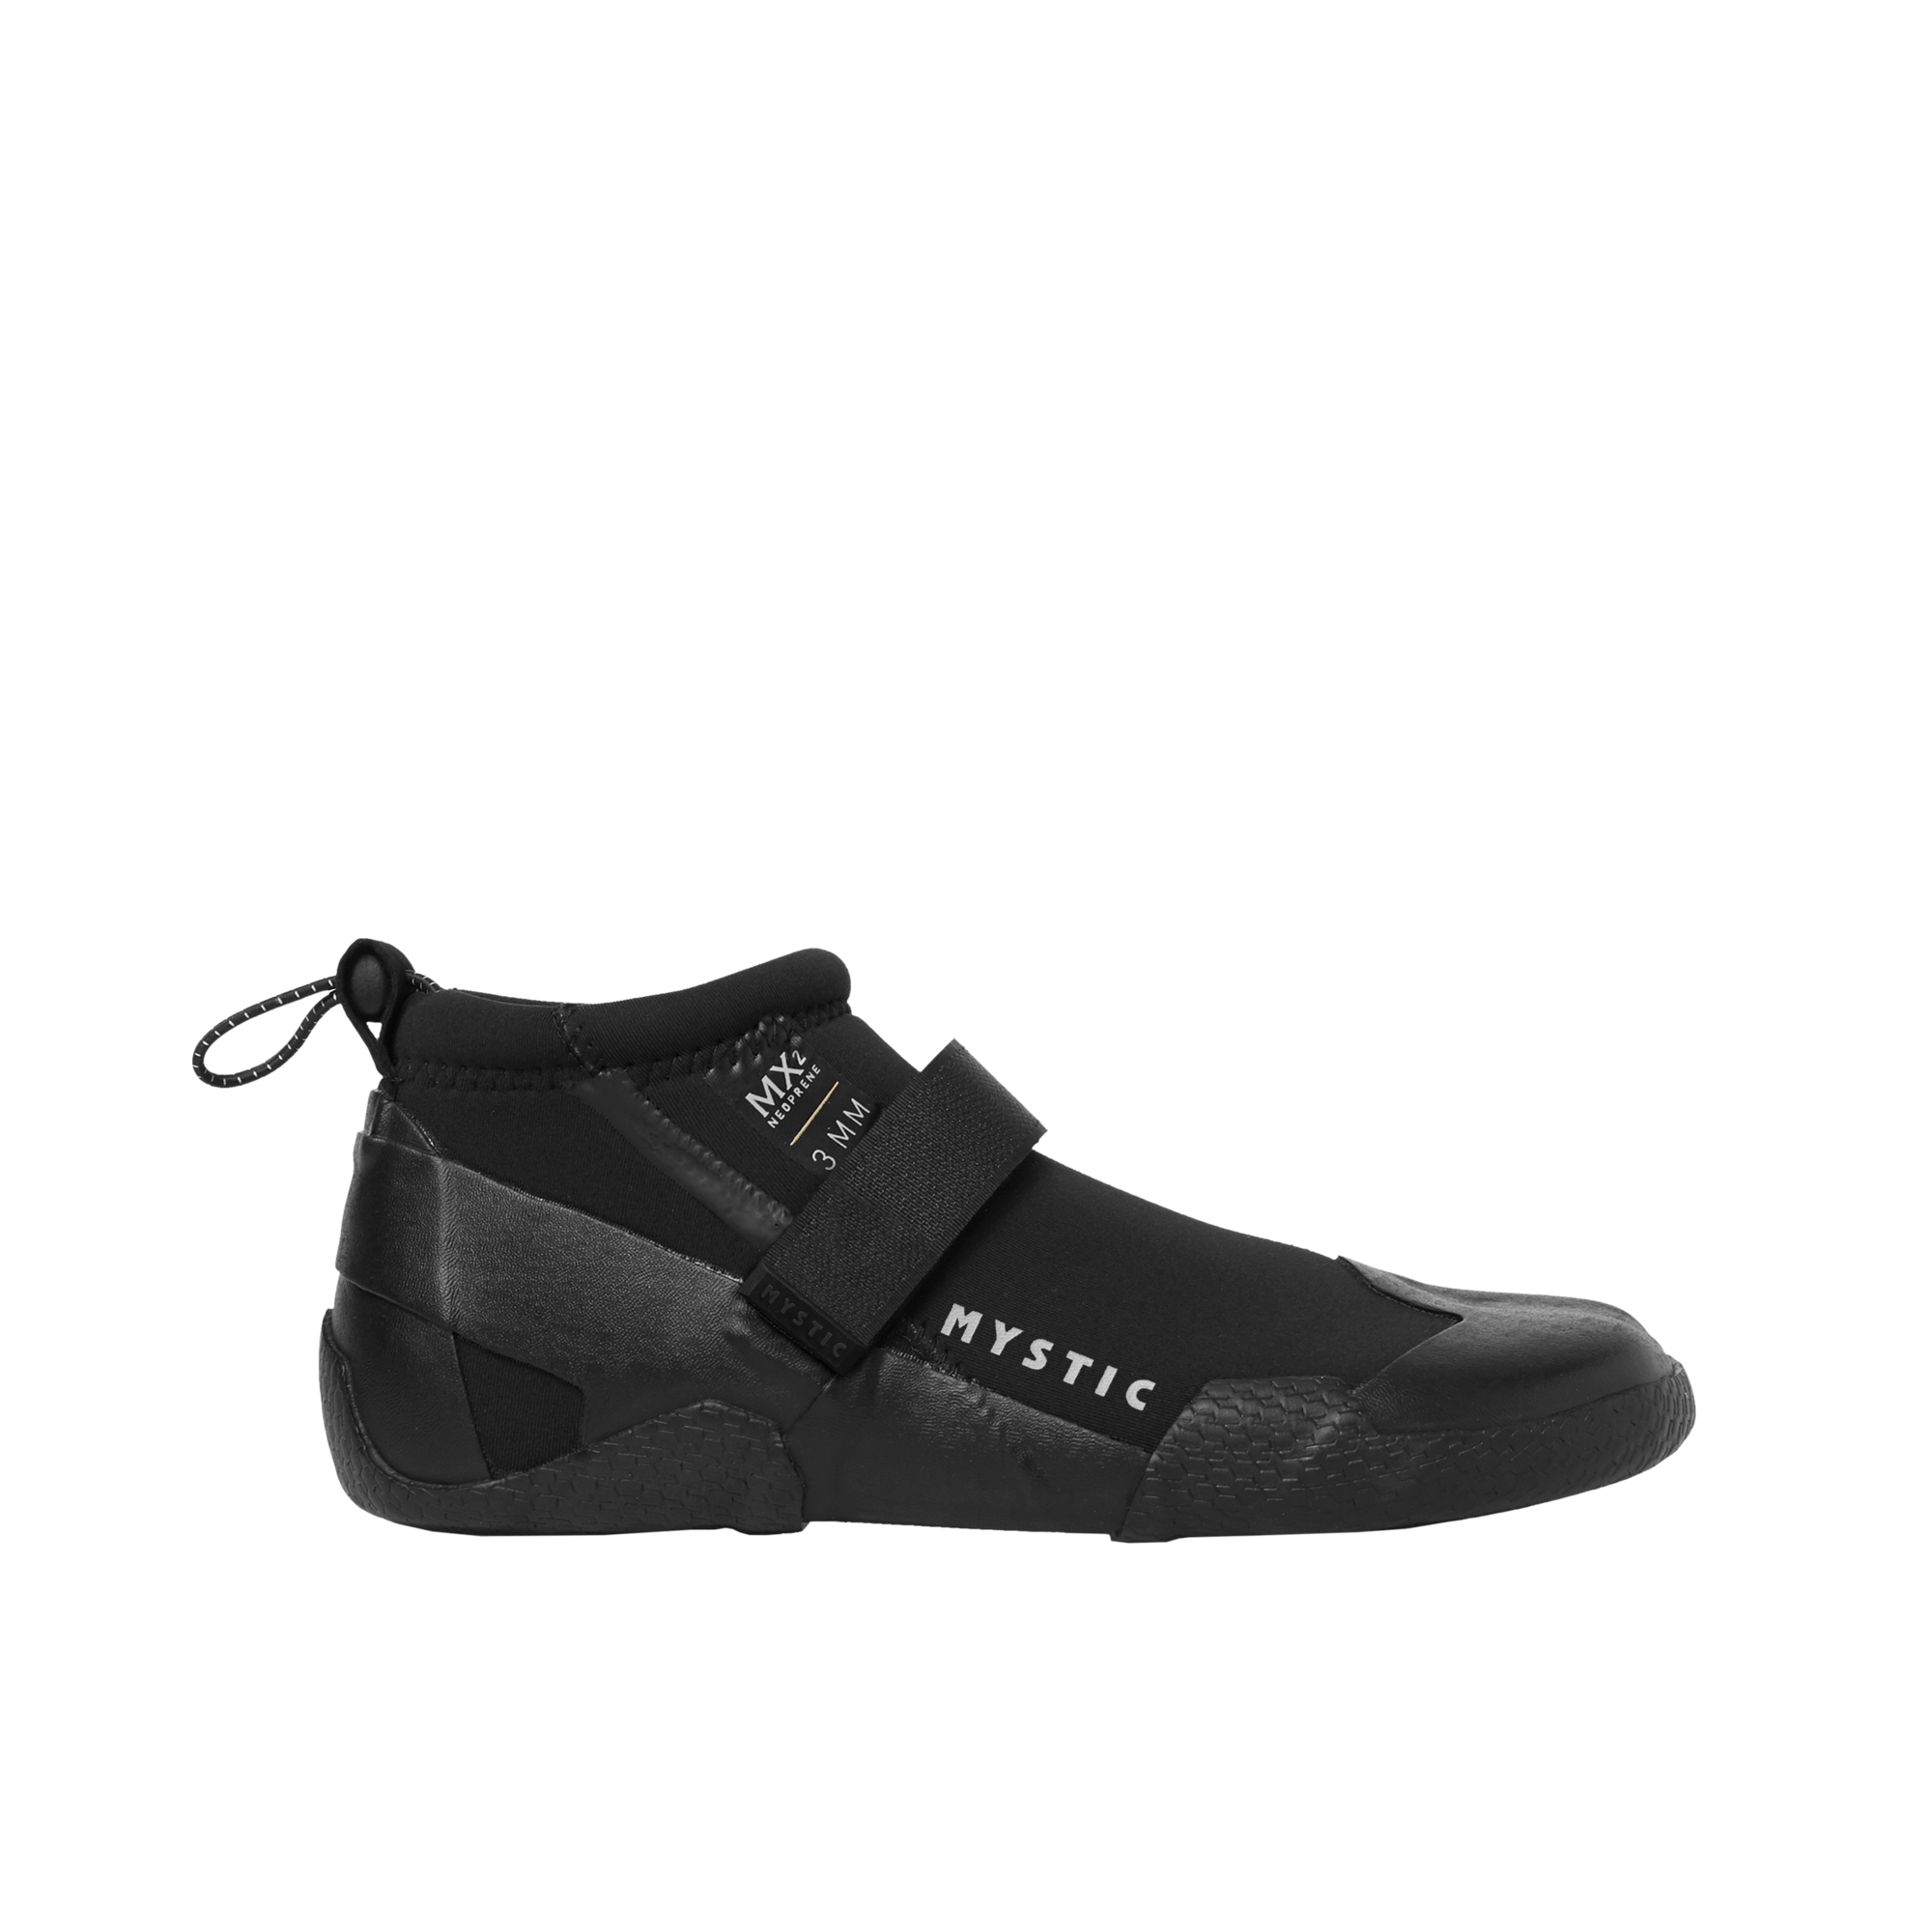 Mystic roam schoenen 3mm split toe reef black